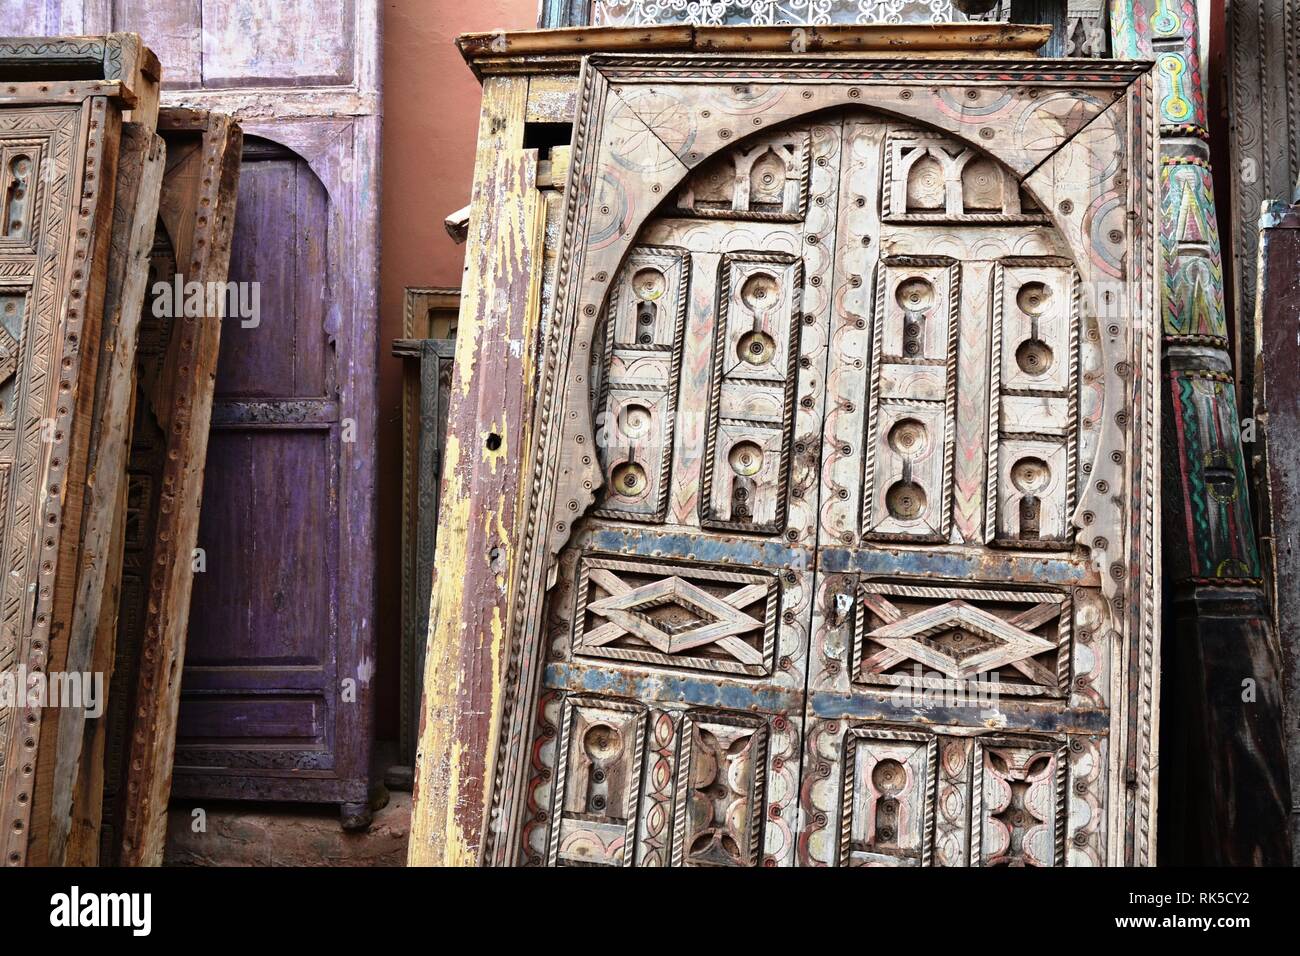 El Esplendor de puertas antiguas hermosa antigua puerta marroquí. Marrakech, Marruecos. Foto de stock